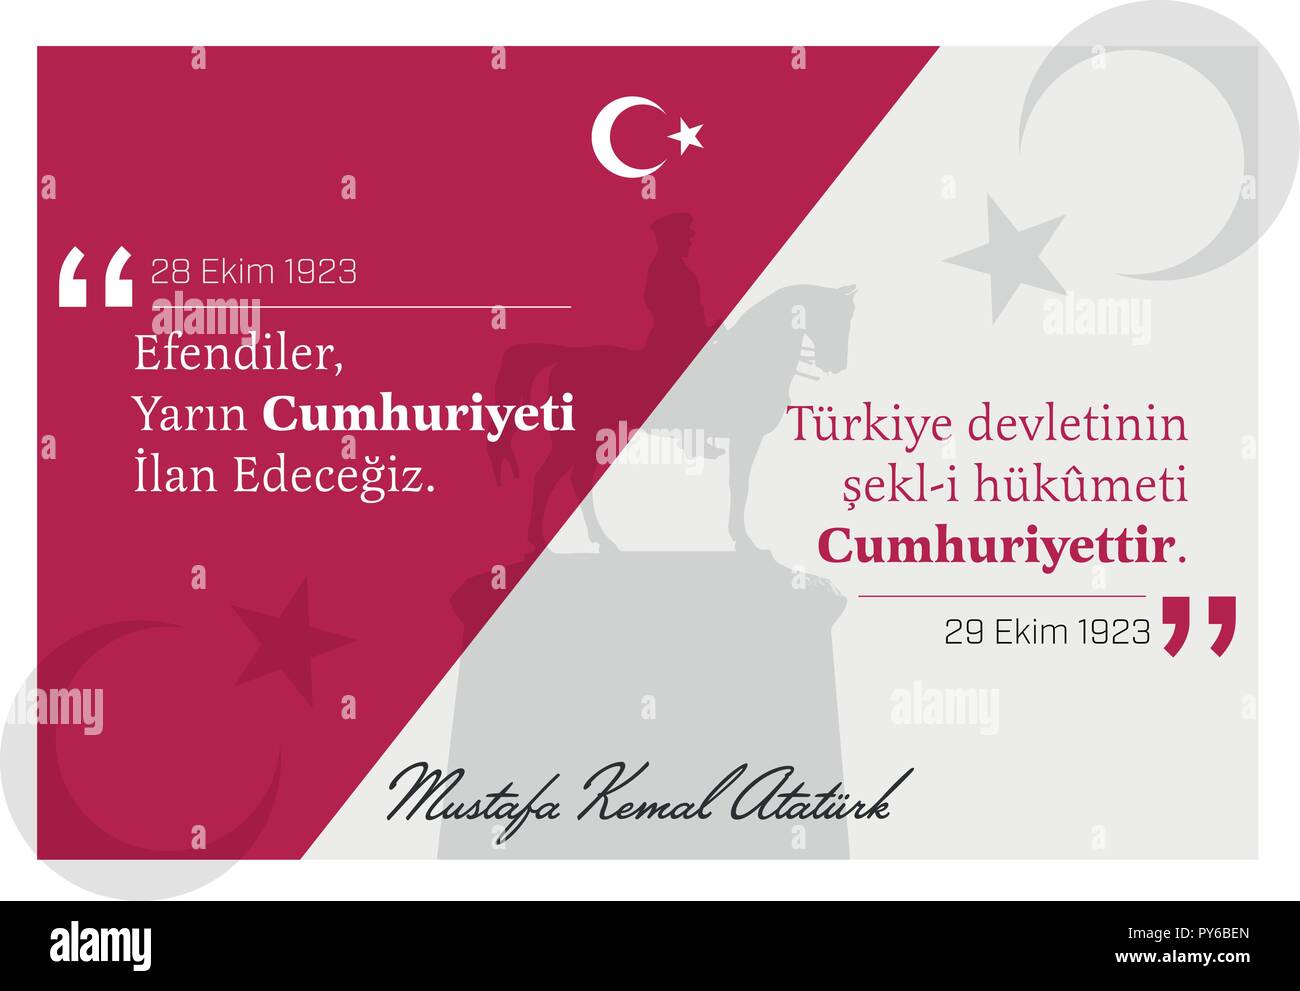 Der Tag der Ankündigung der Republik in der Türkei 29. Oktober 1923. Türkischen nationalen Tag der Republik. Stock Vektor